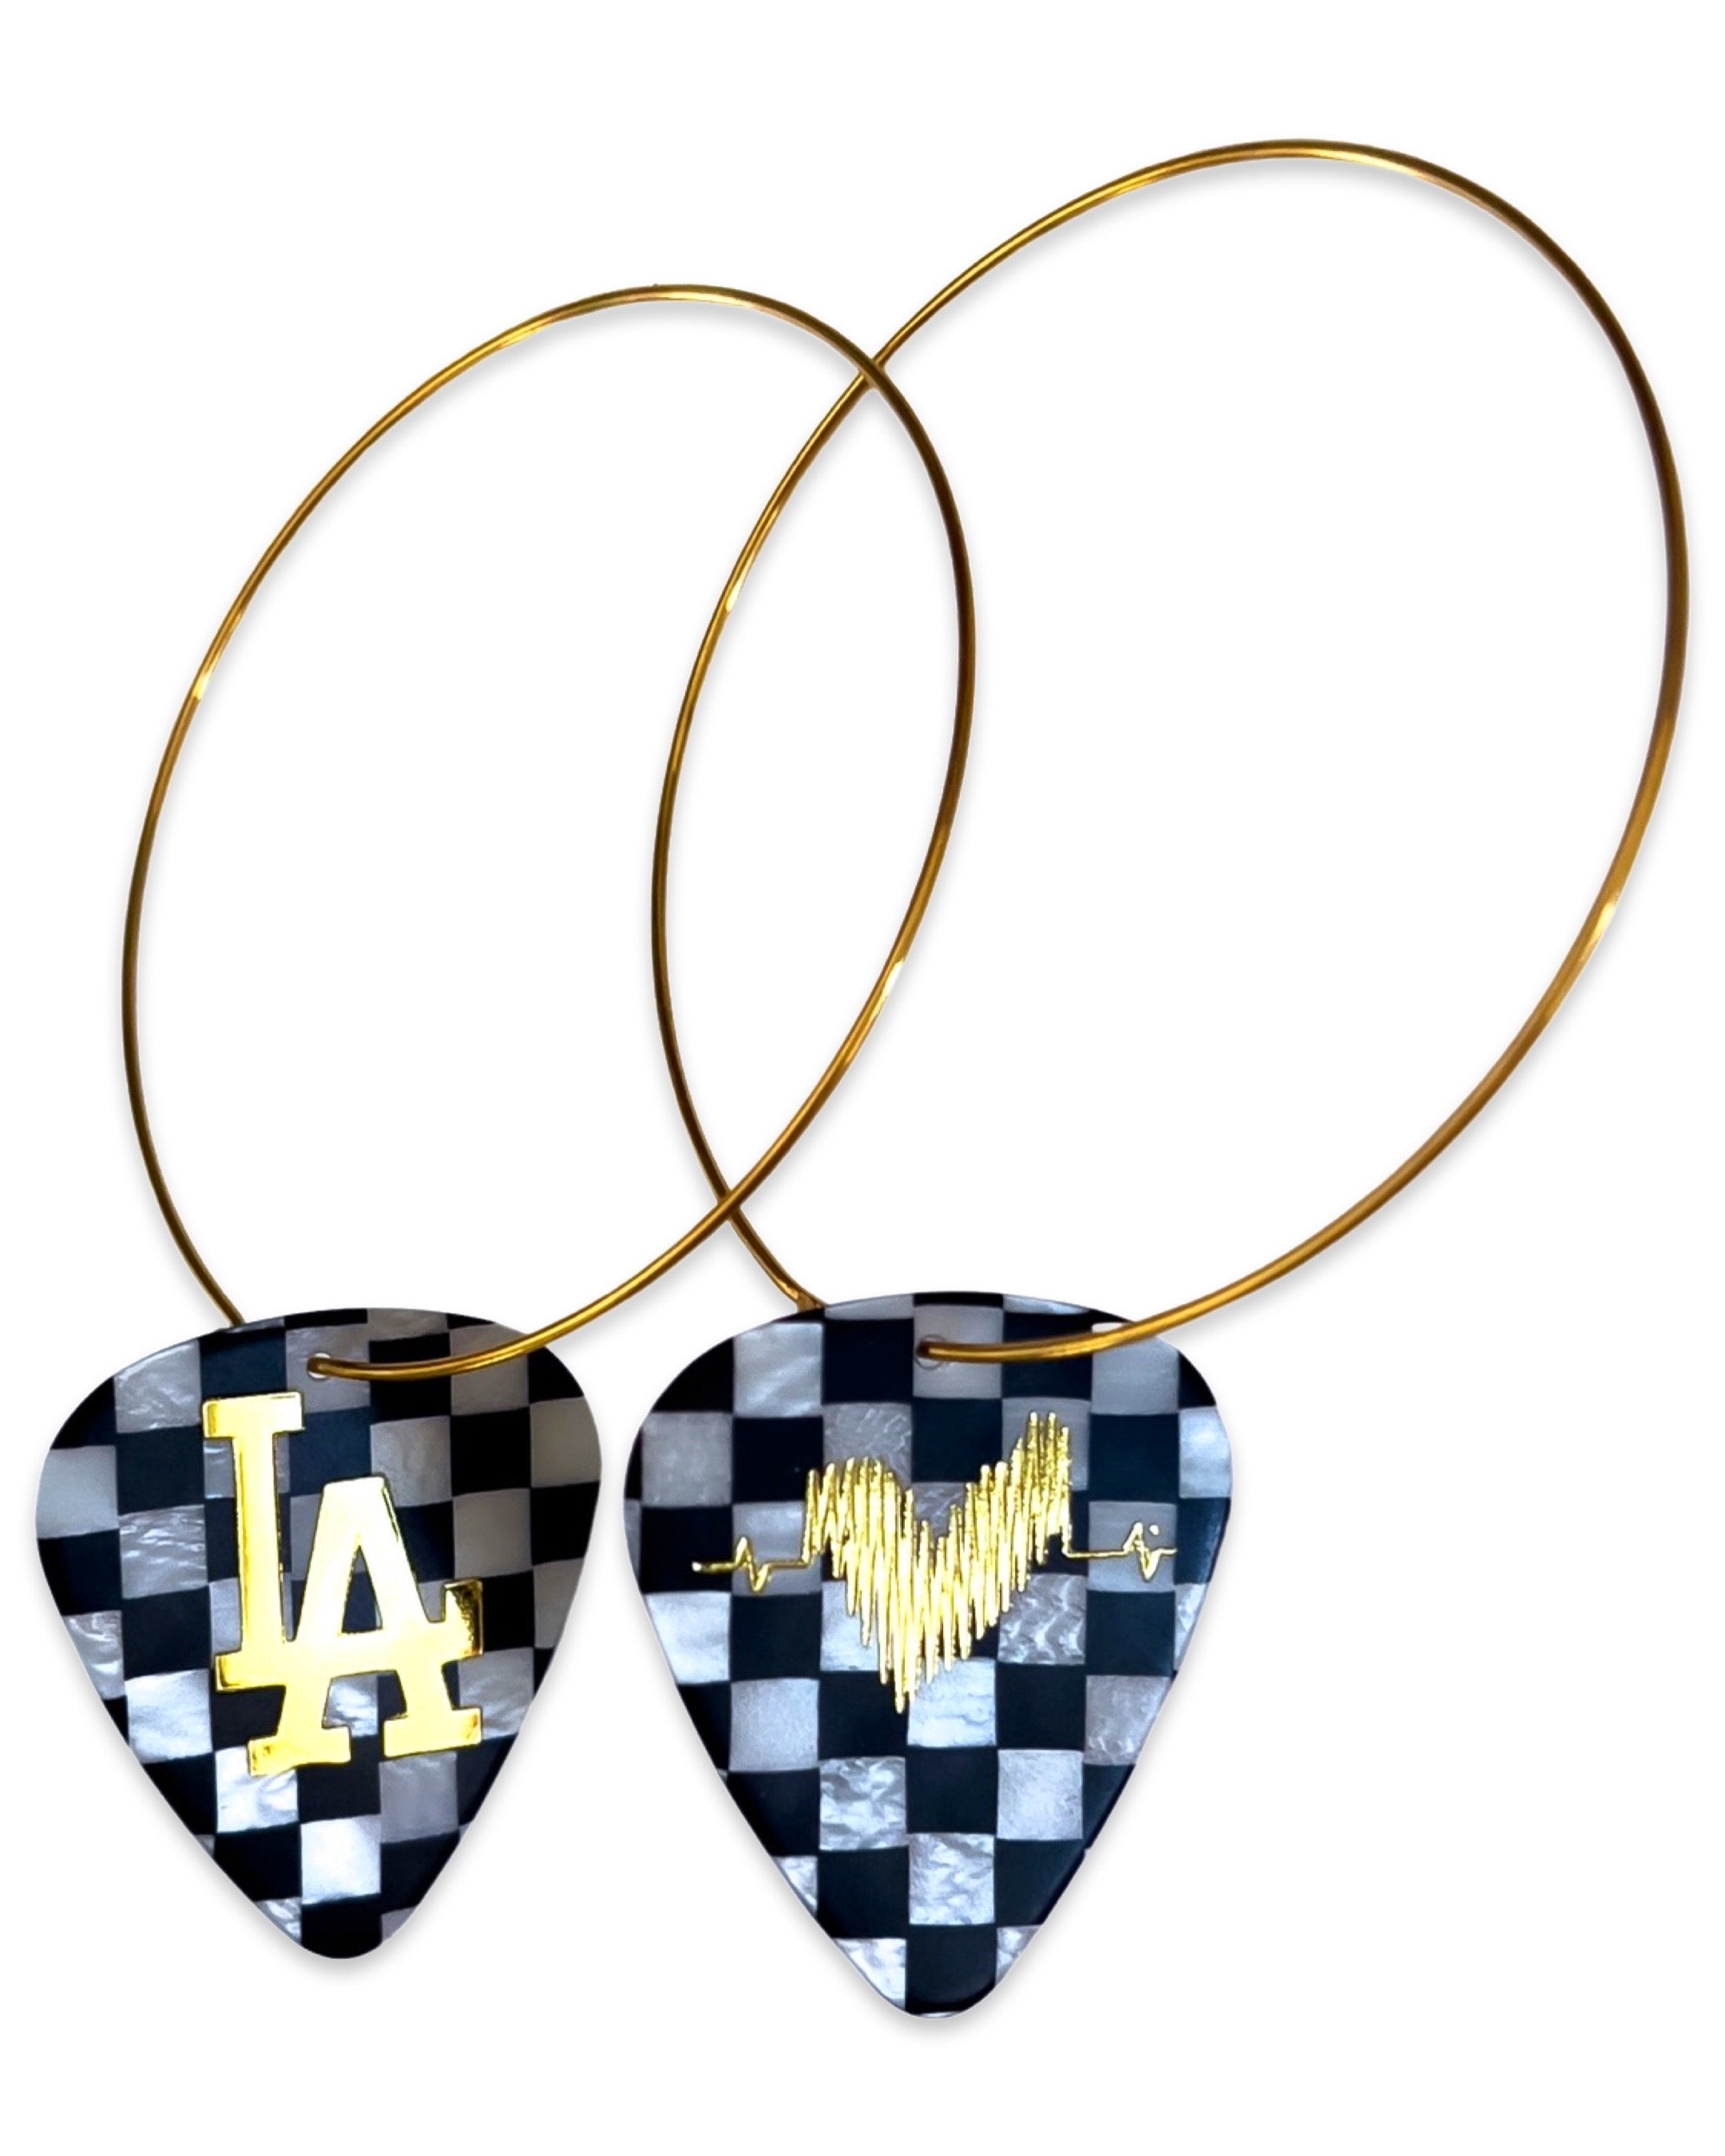 LA Checkerboard Single Guitar Pick Earrings